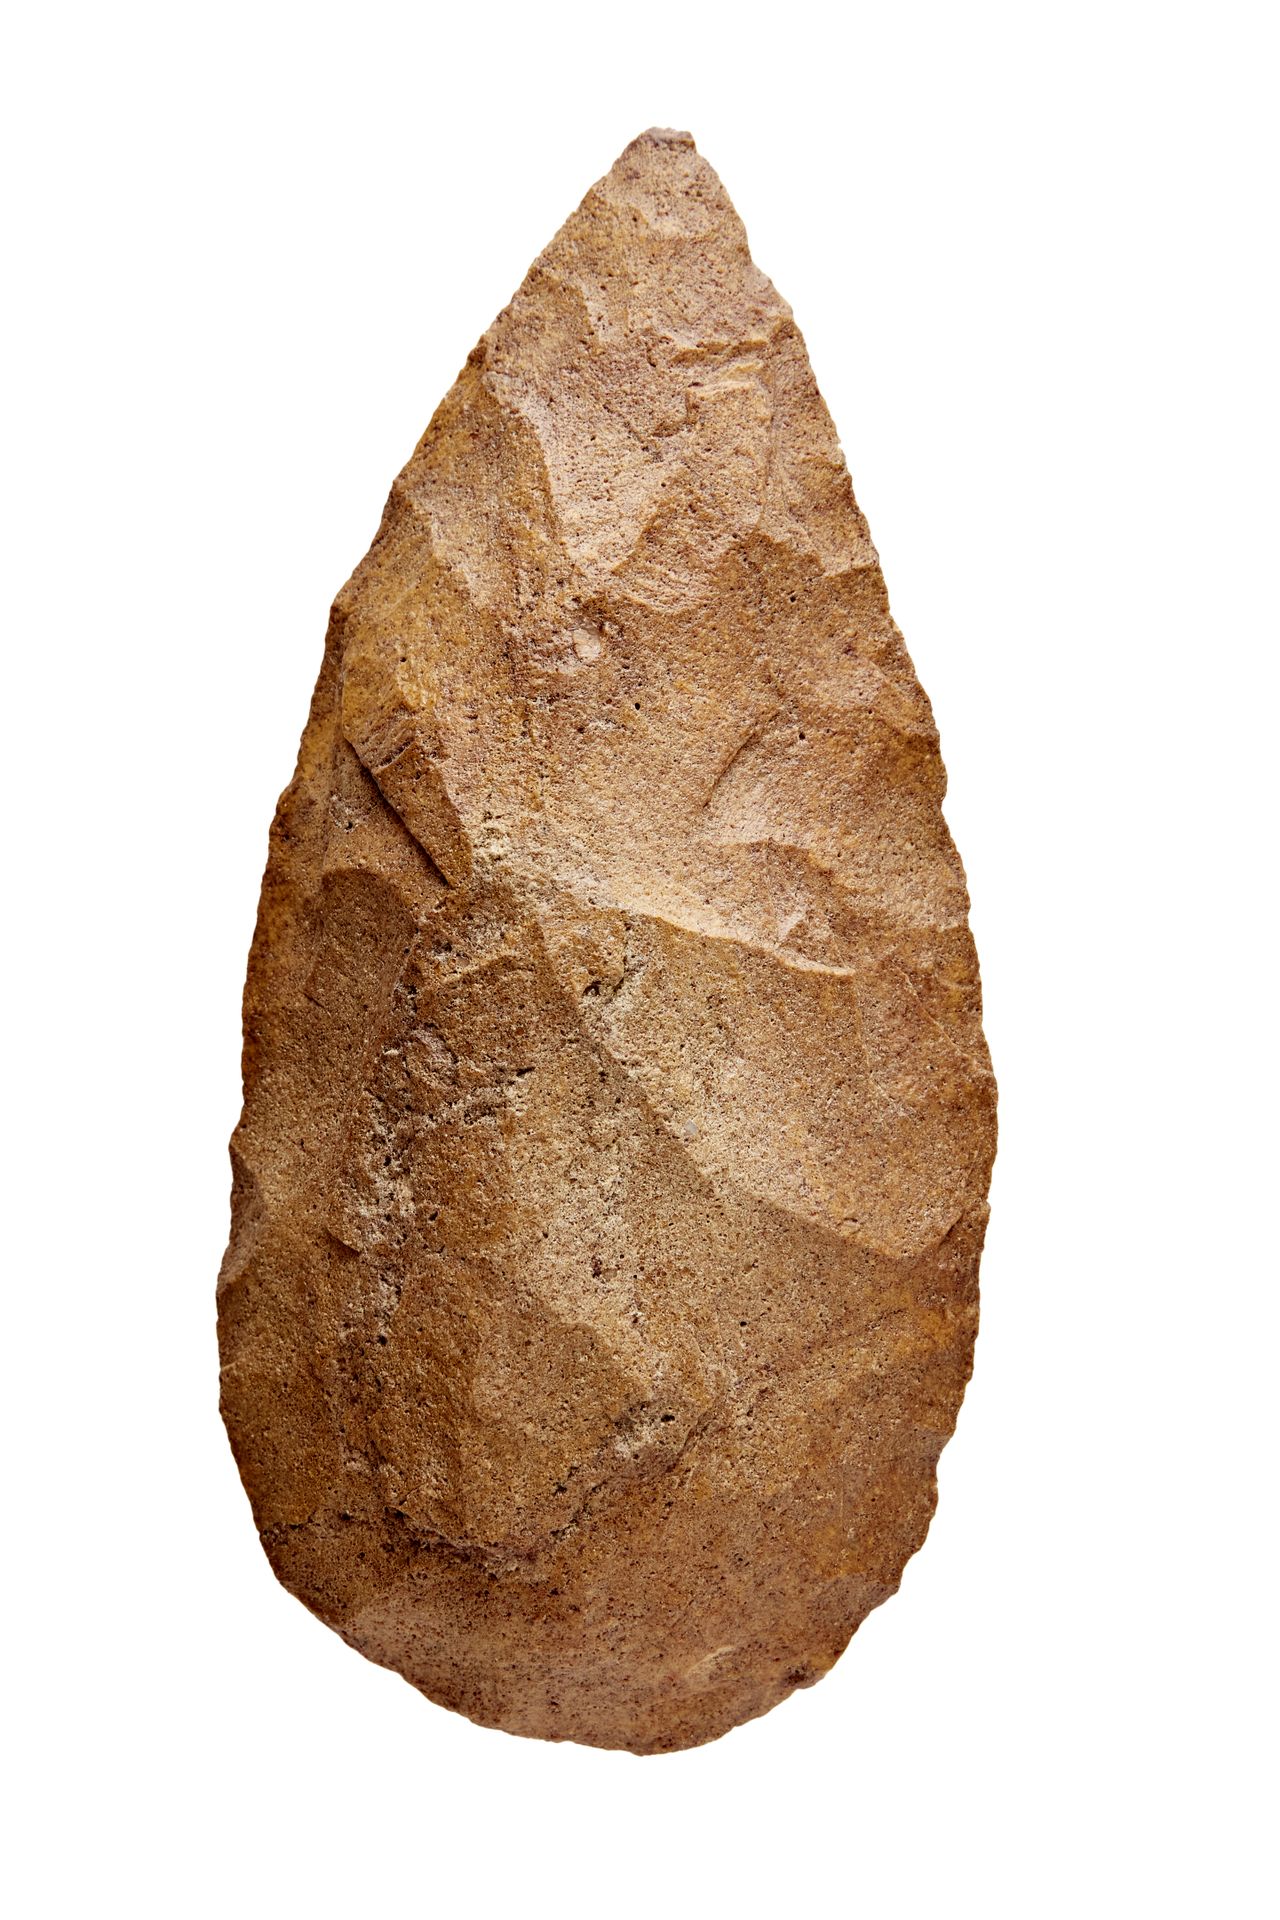 Beau biface amygdaloïde Lustrous brown quartzite
Sub-Saharan West Africa, Middle&hellip;